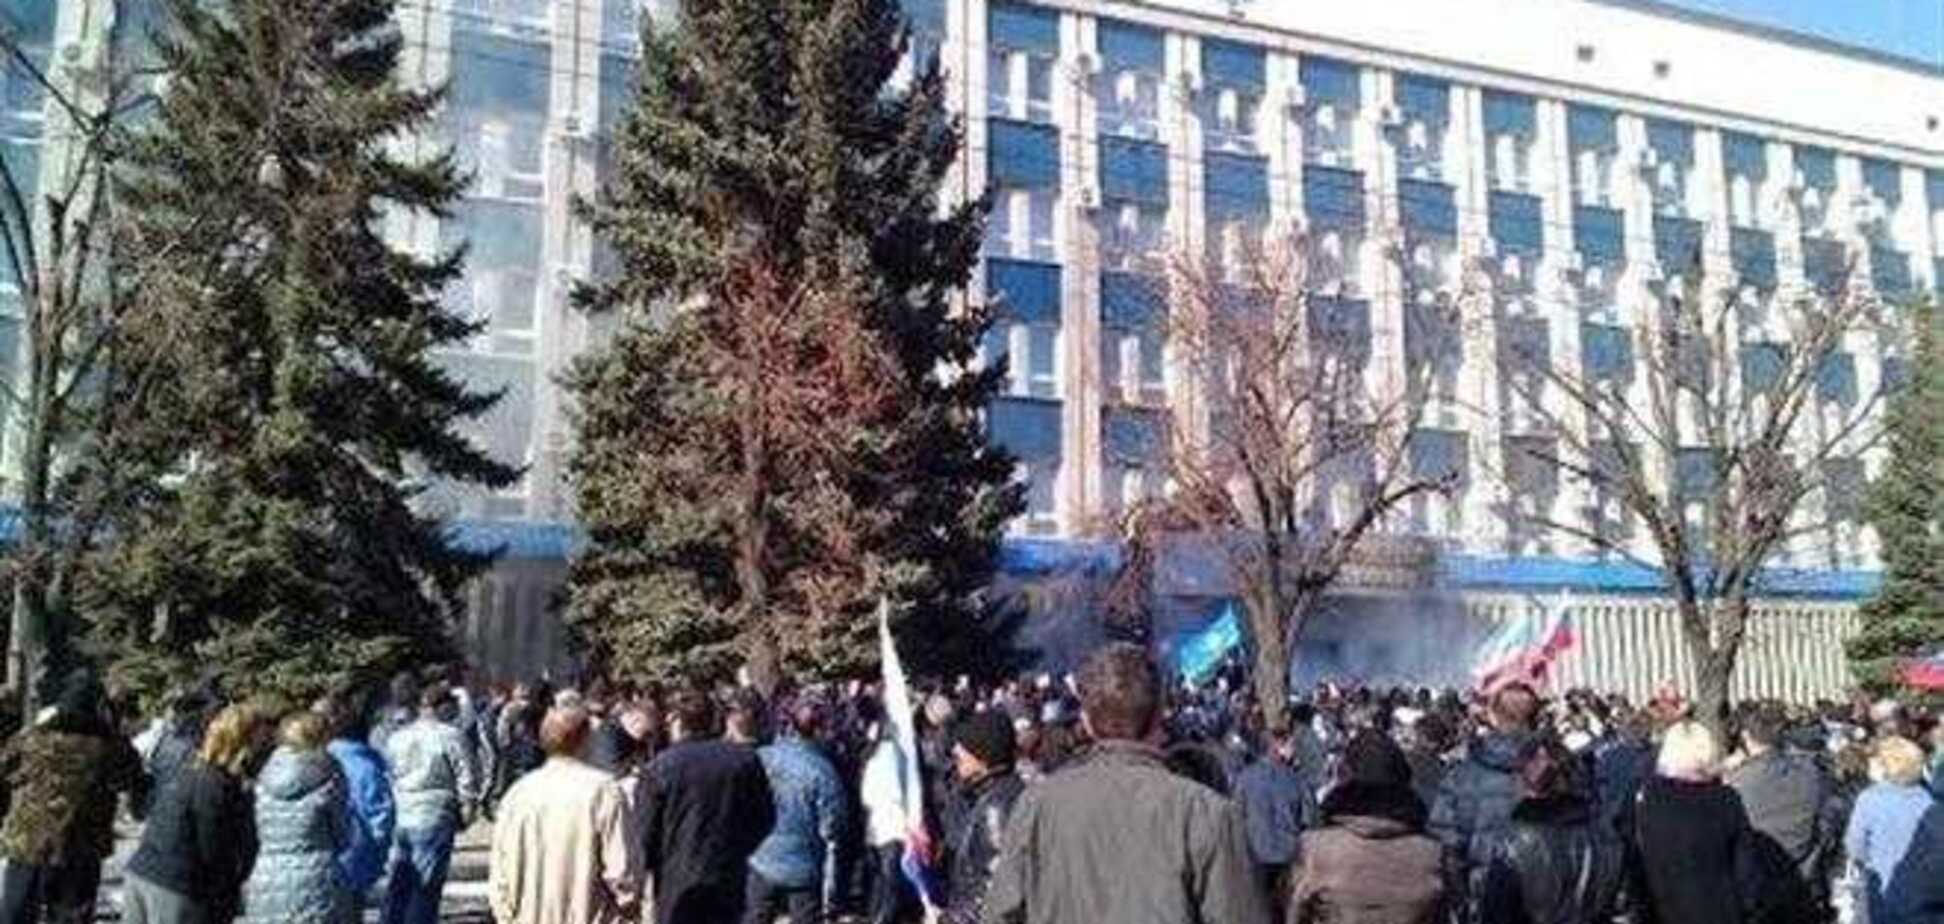 Захват здания СБУ в Луганске: силовика вынесли на носилках, женщине разбили голову